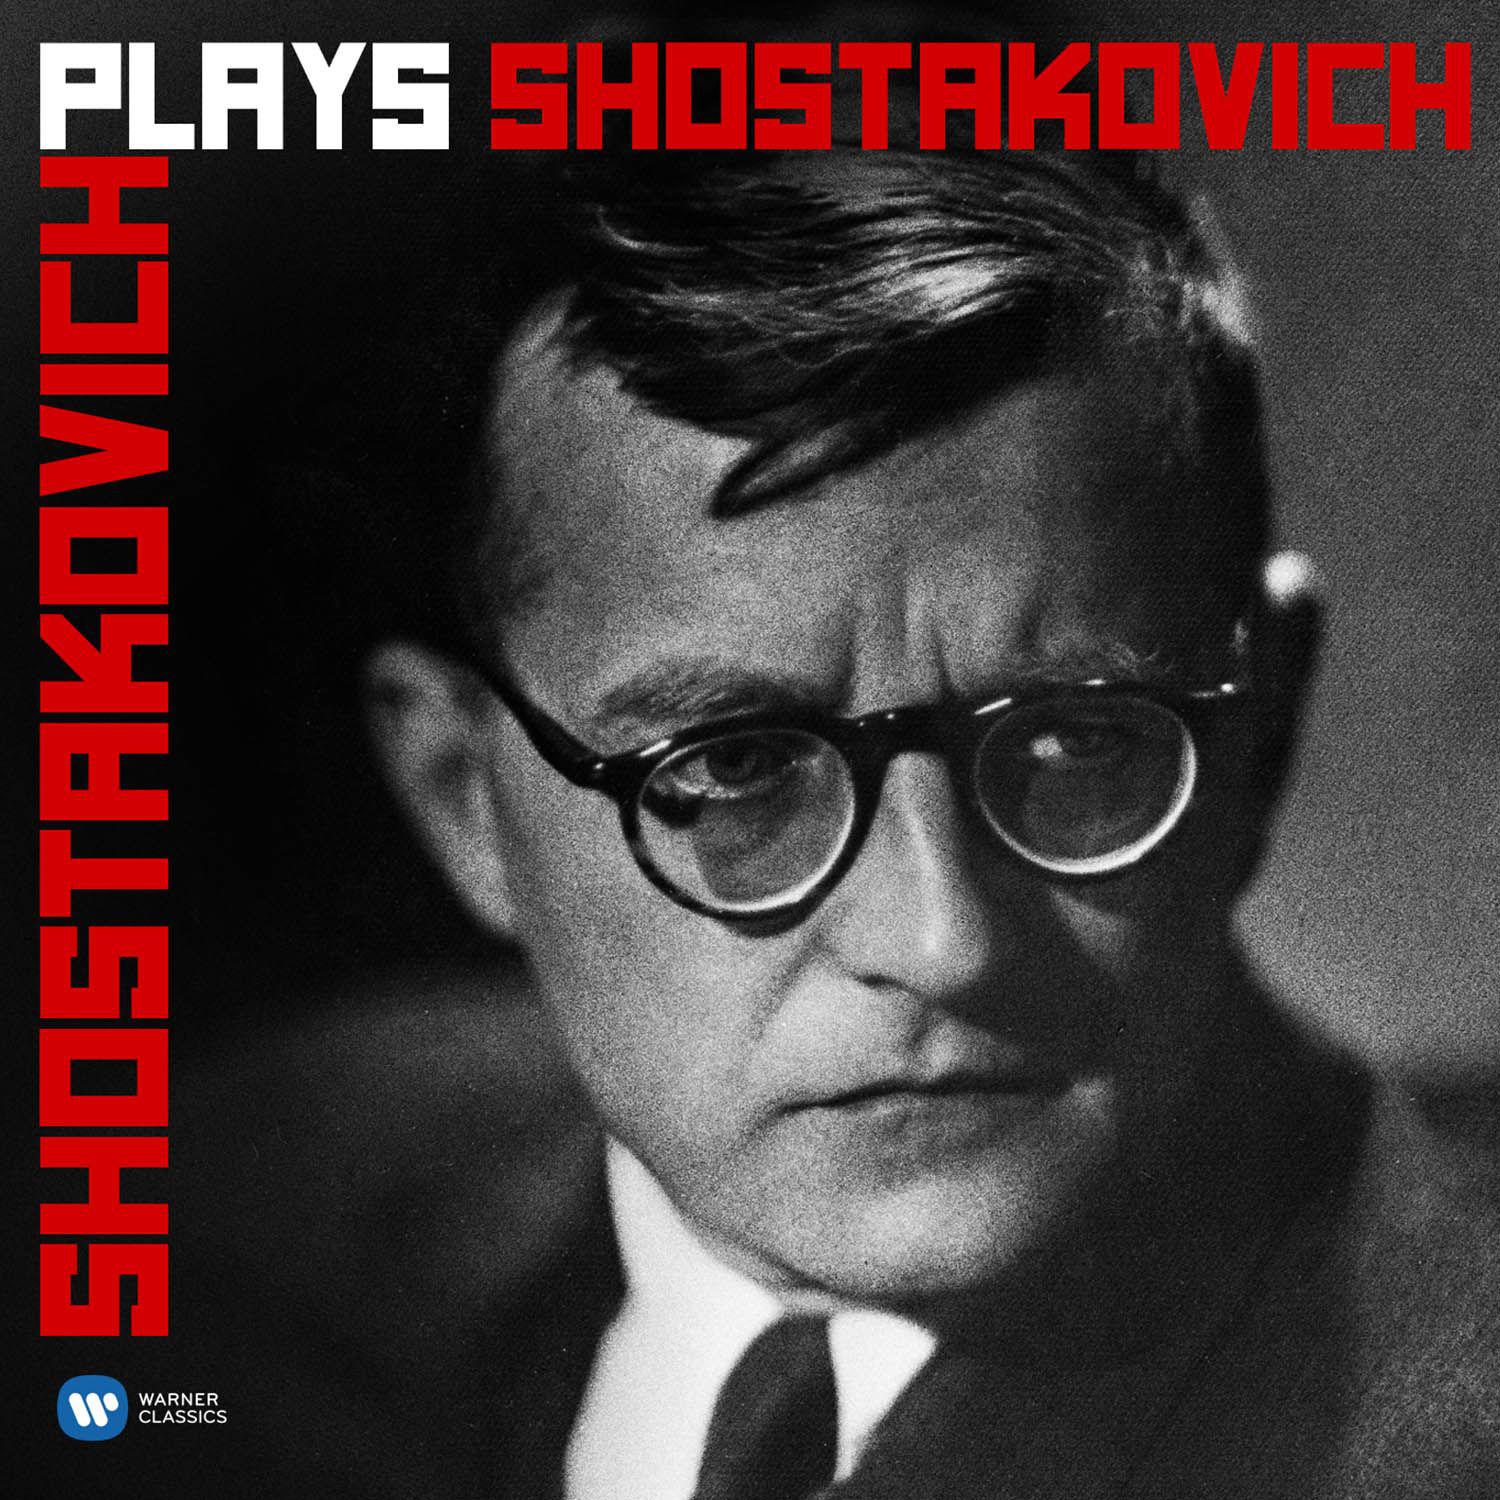 Shostakovich:24 Preludes and Fugues, Op. 87: No. 23 in F Major, Adagio - Moderato con moto